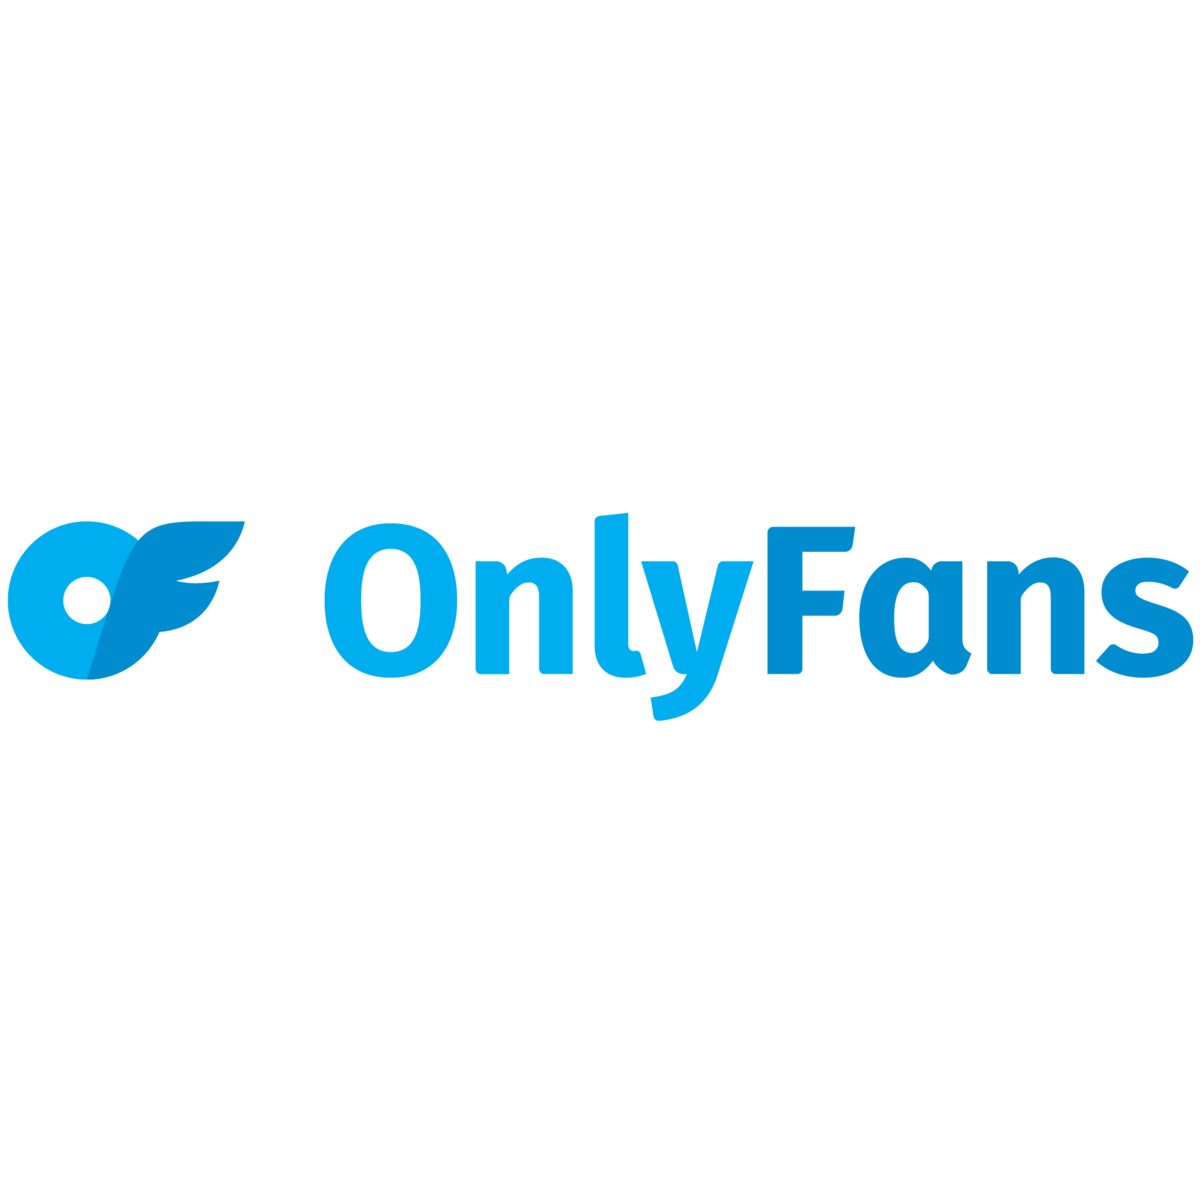 onlyfans.com